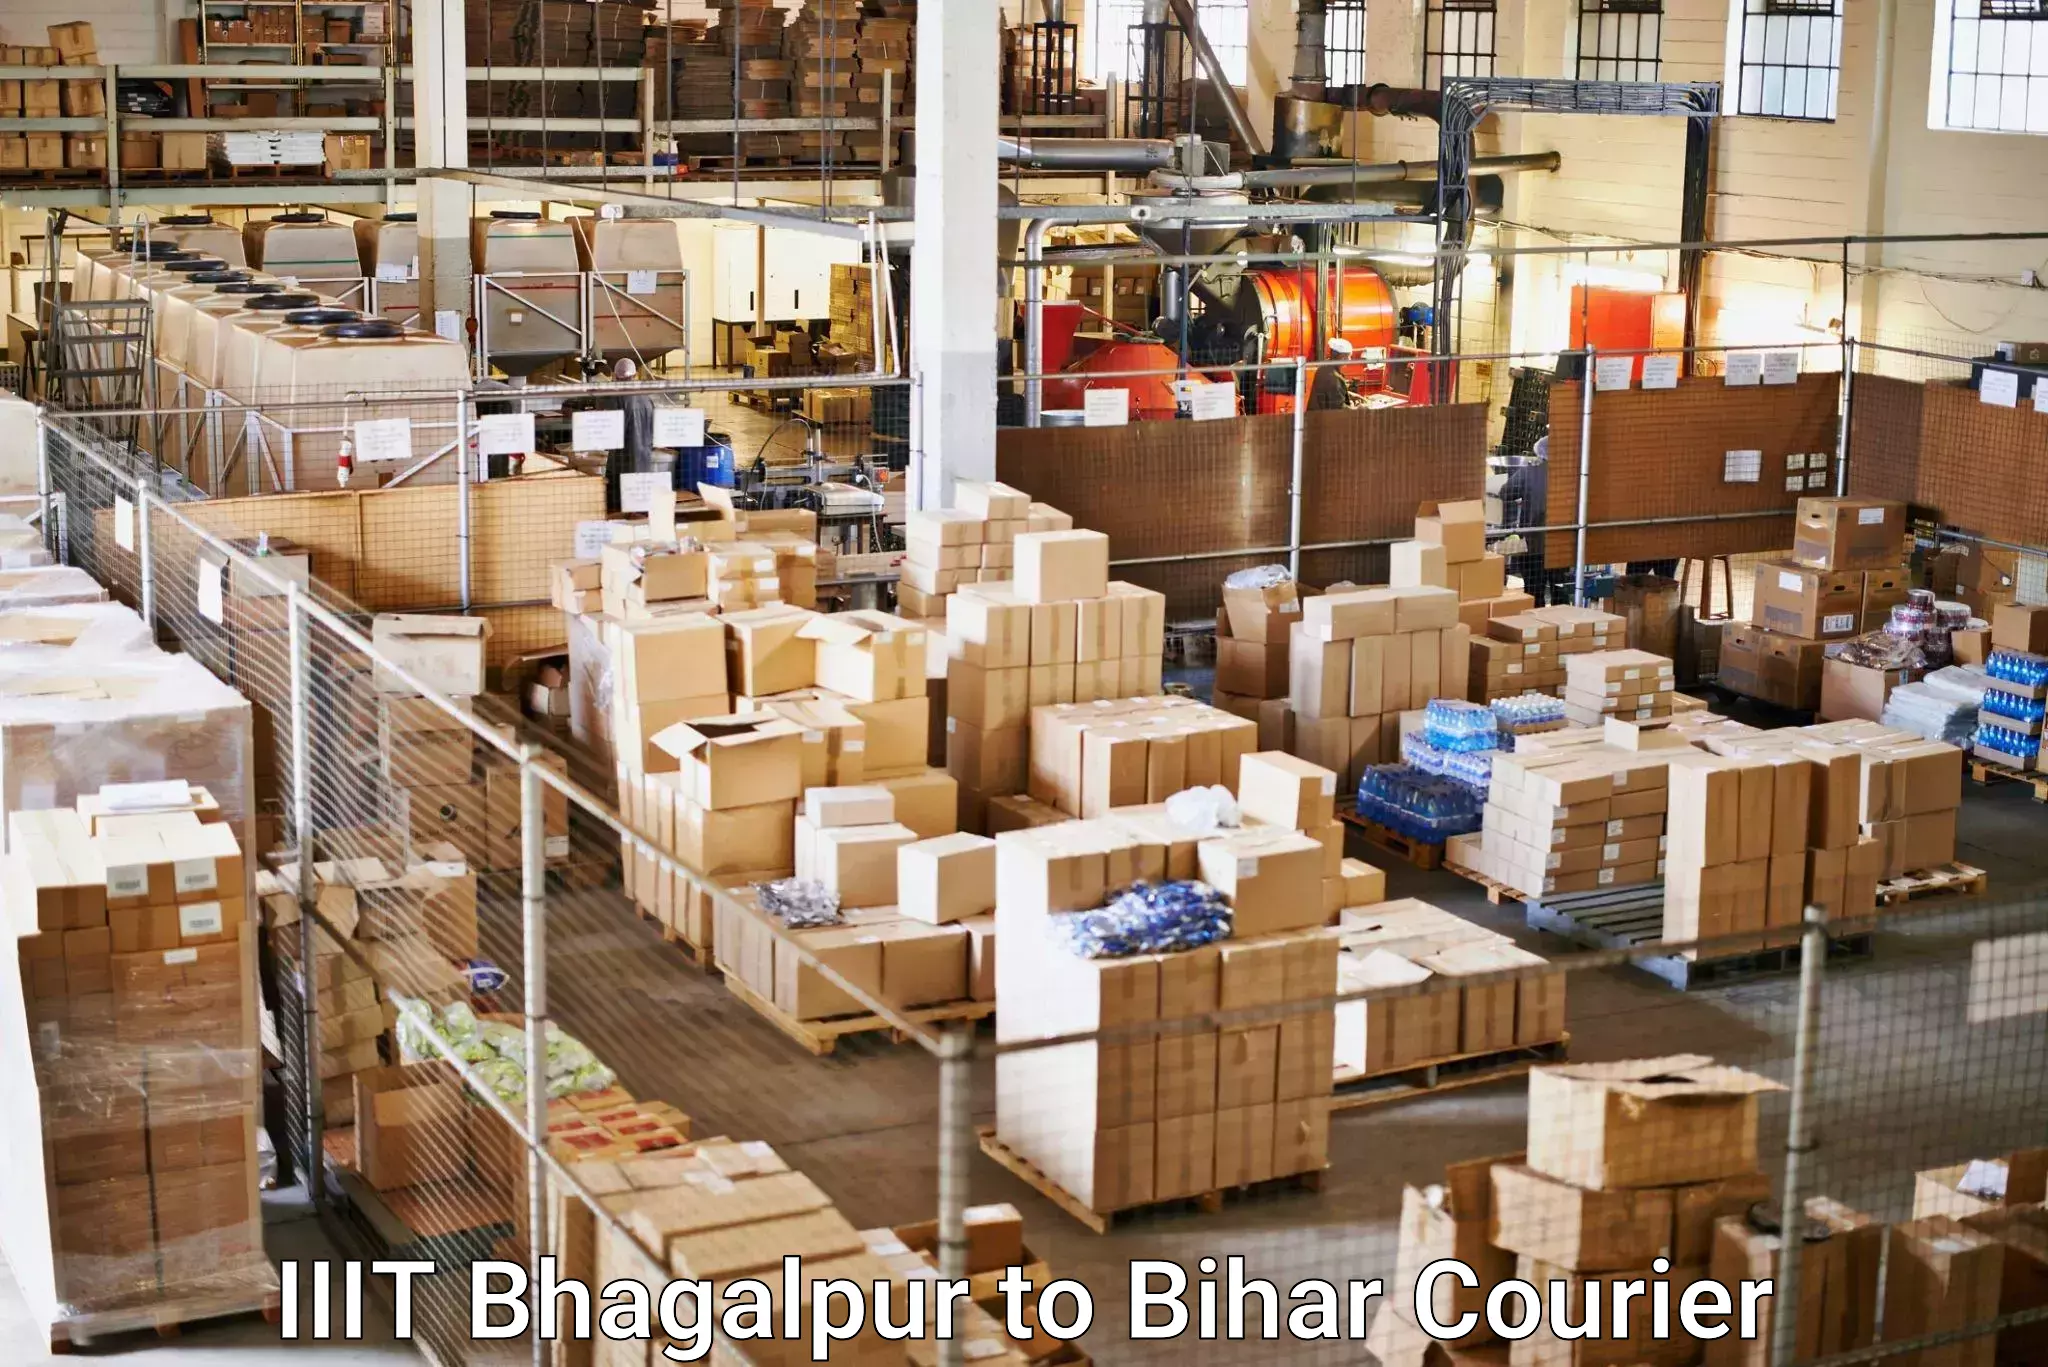 Next-generation courier services IIIT Bhagalpur to Bihar